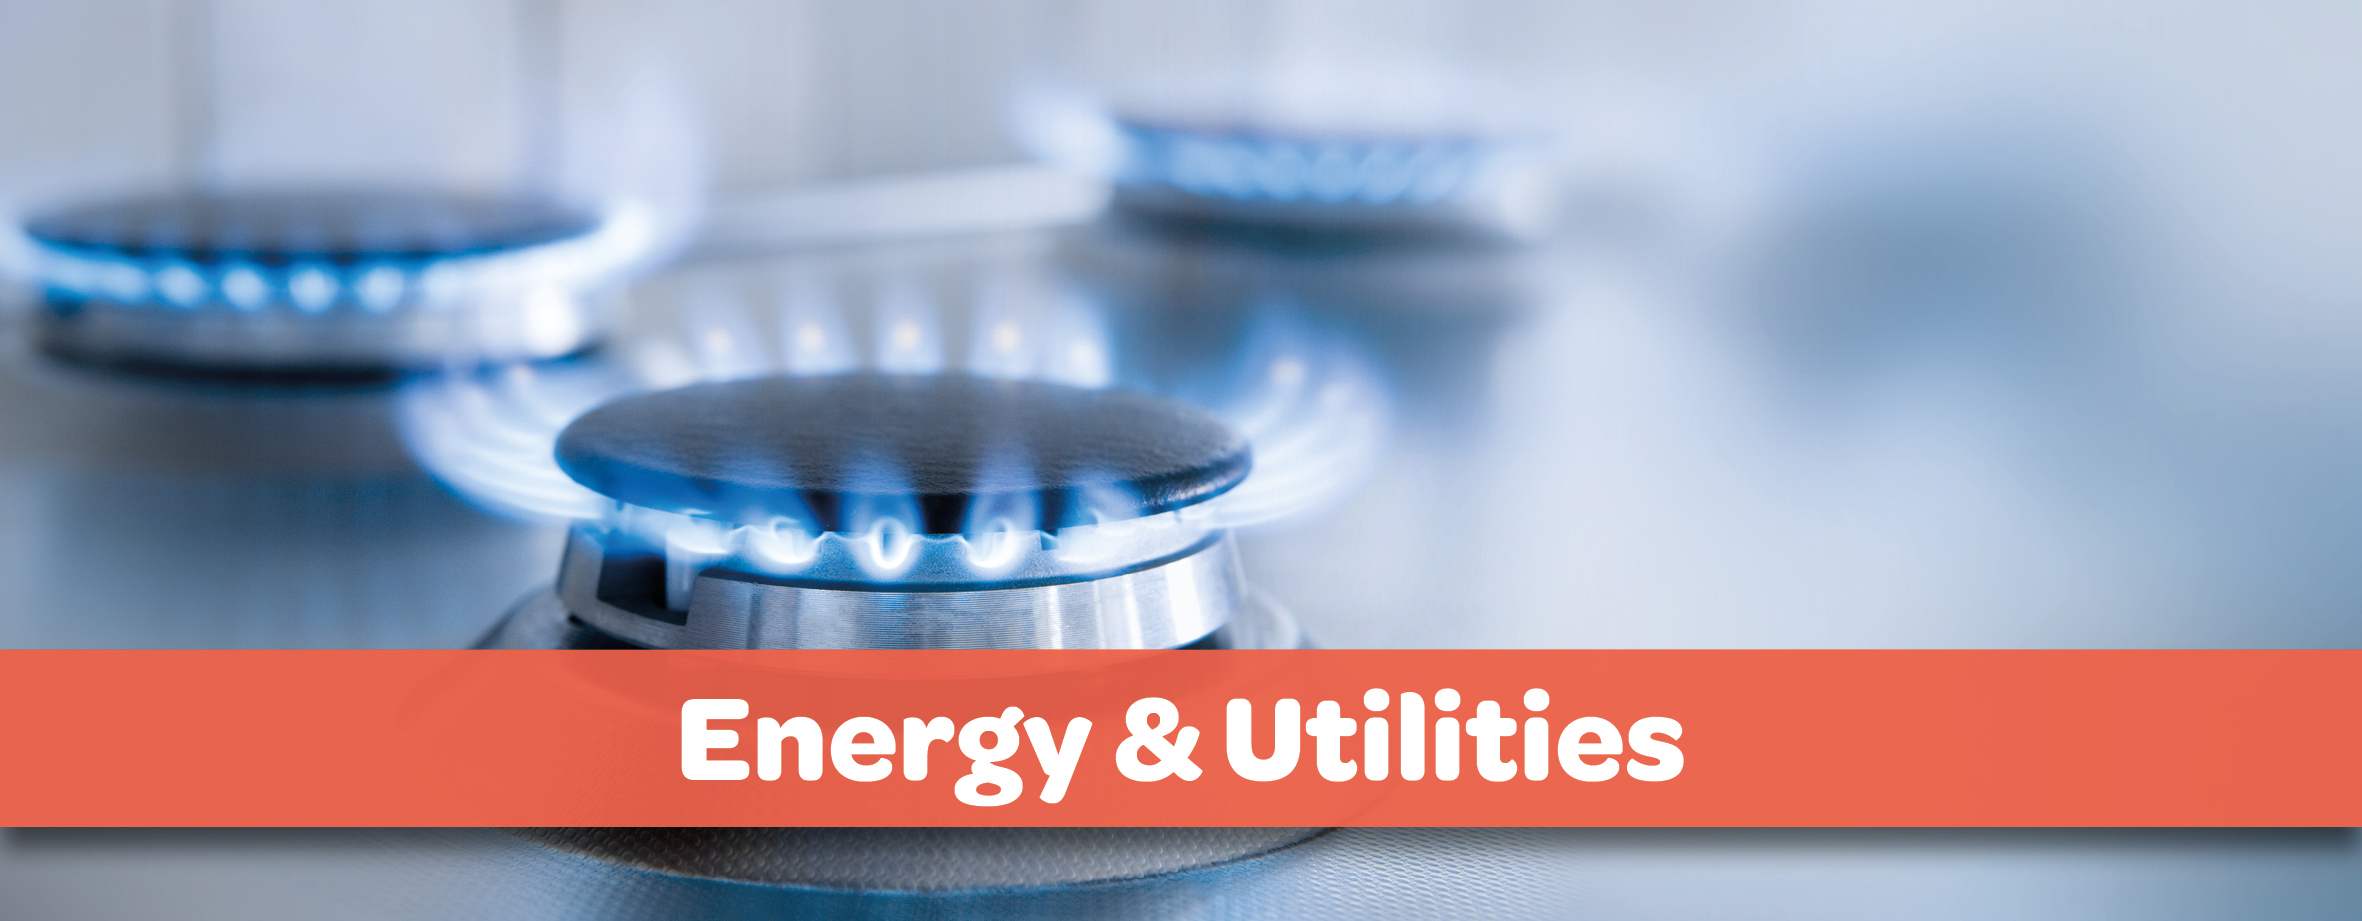 Energy & utilities